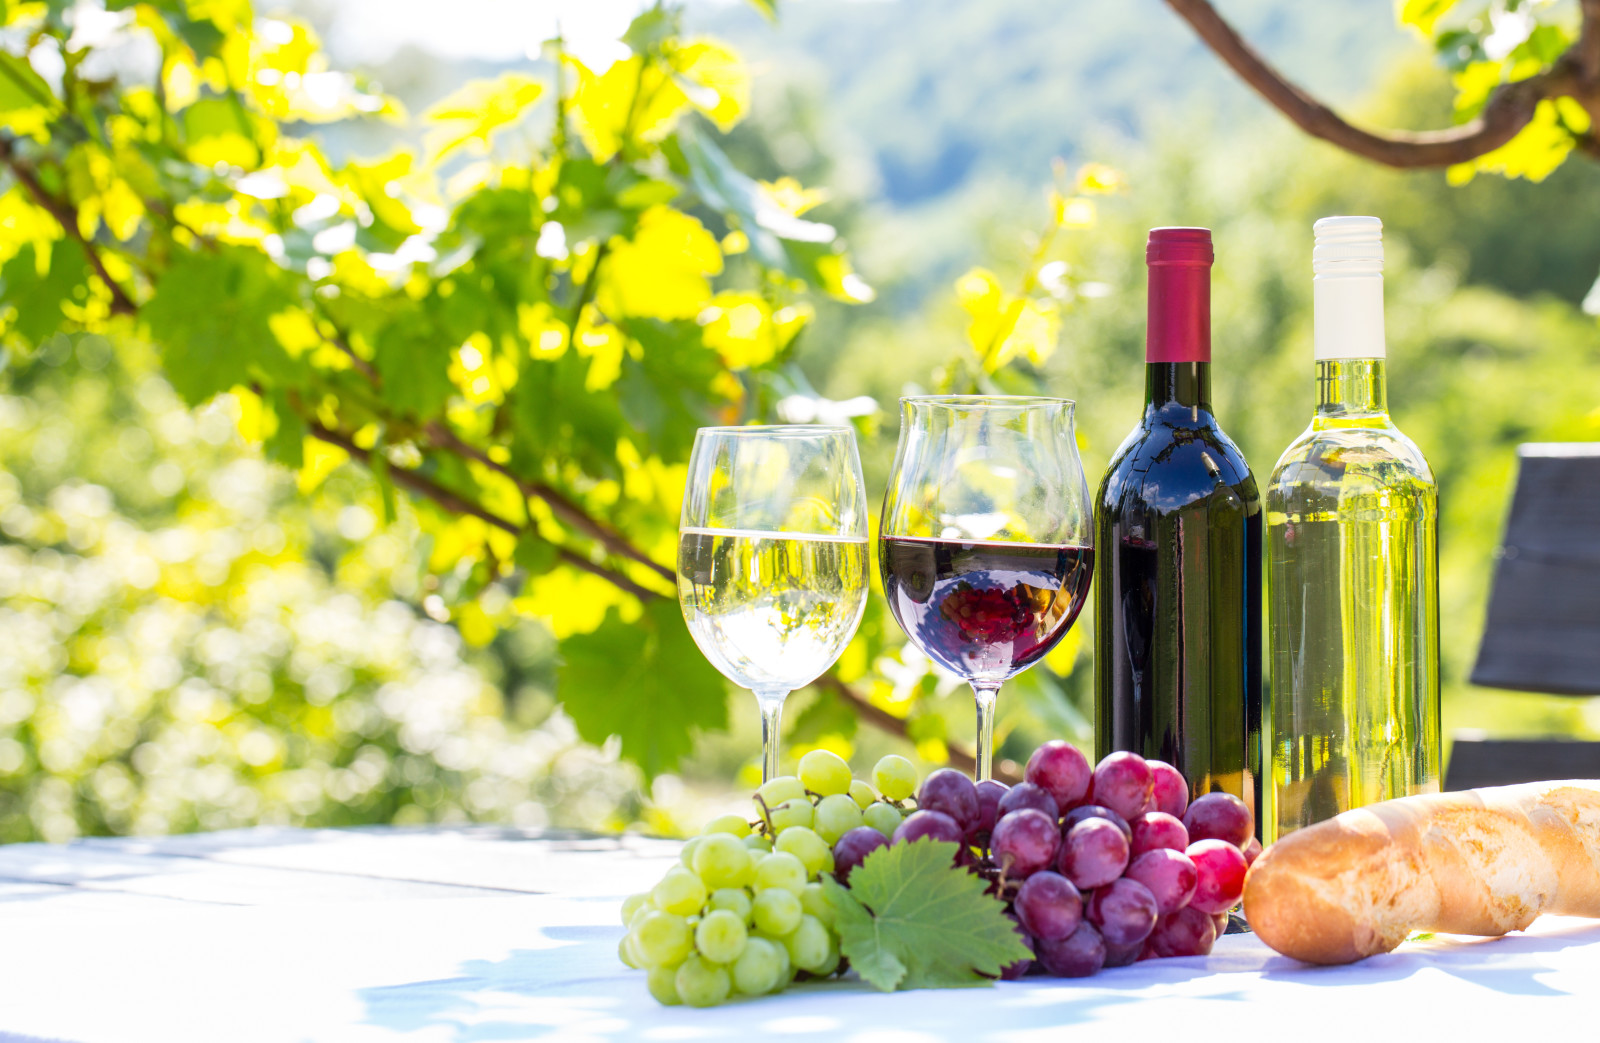 merah, putih, Daun-daun, anggur, kacamata, roti, anggur, tongkat